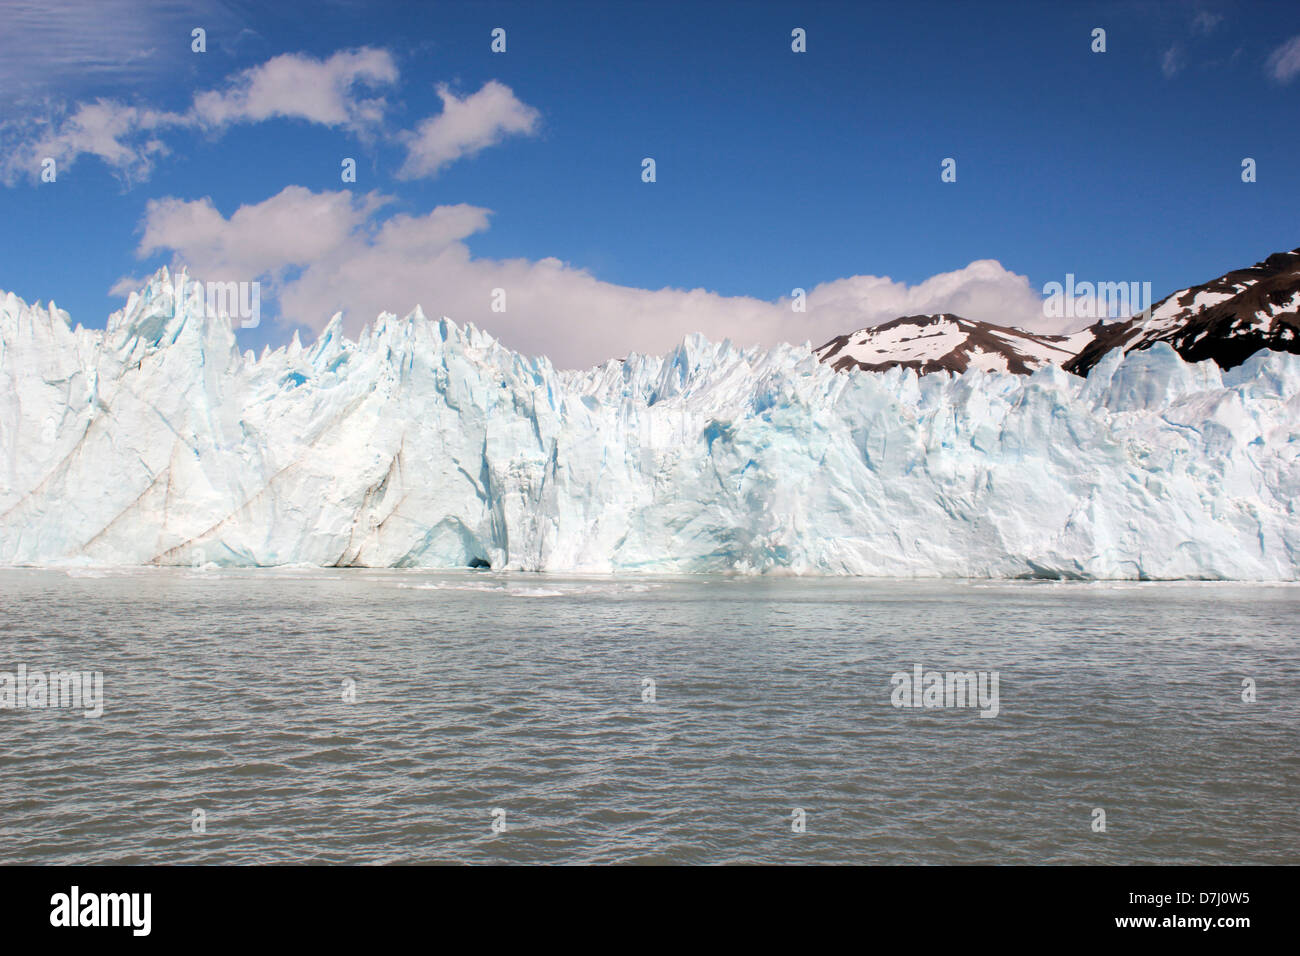 Patagonien Patagonia Perito Moreno Glacier glaciar in national park Los Glaciares Stock Photo